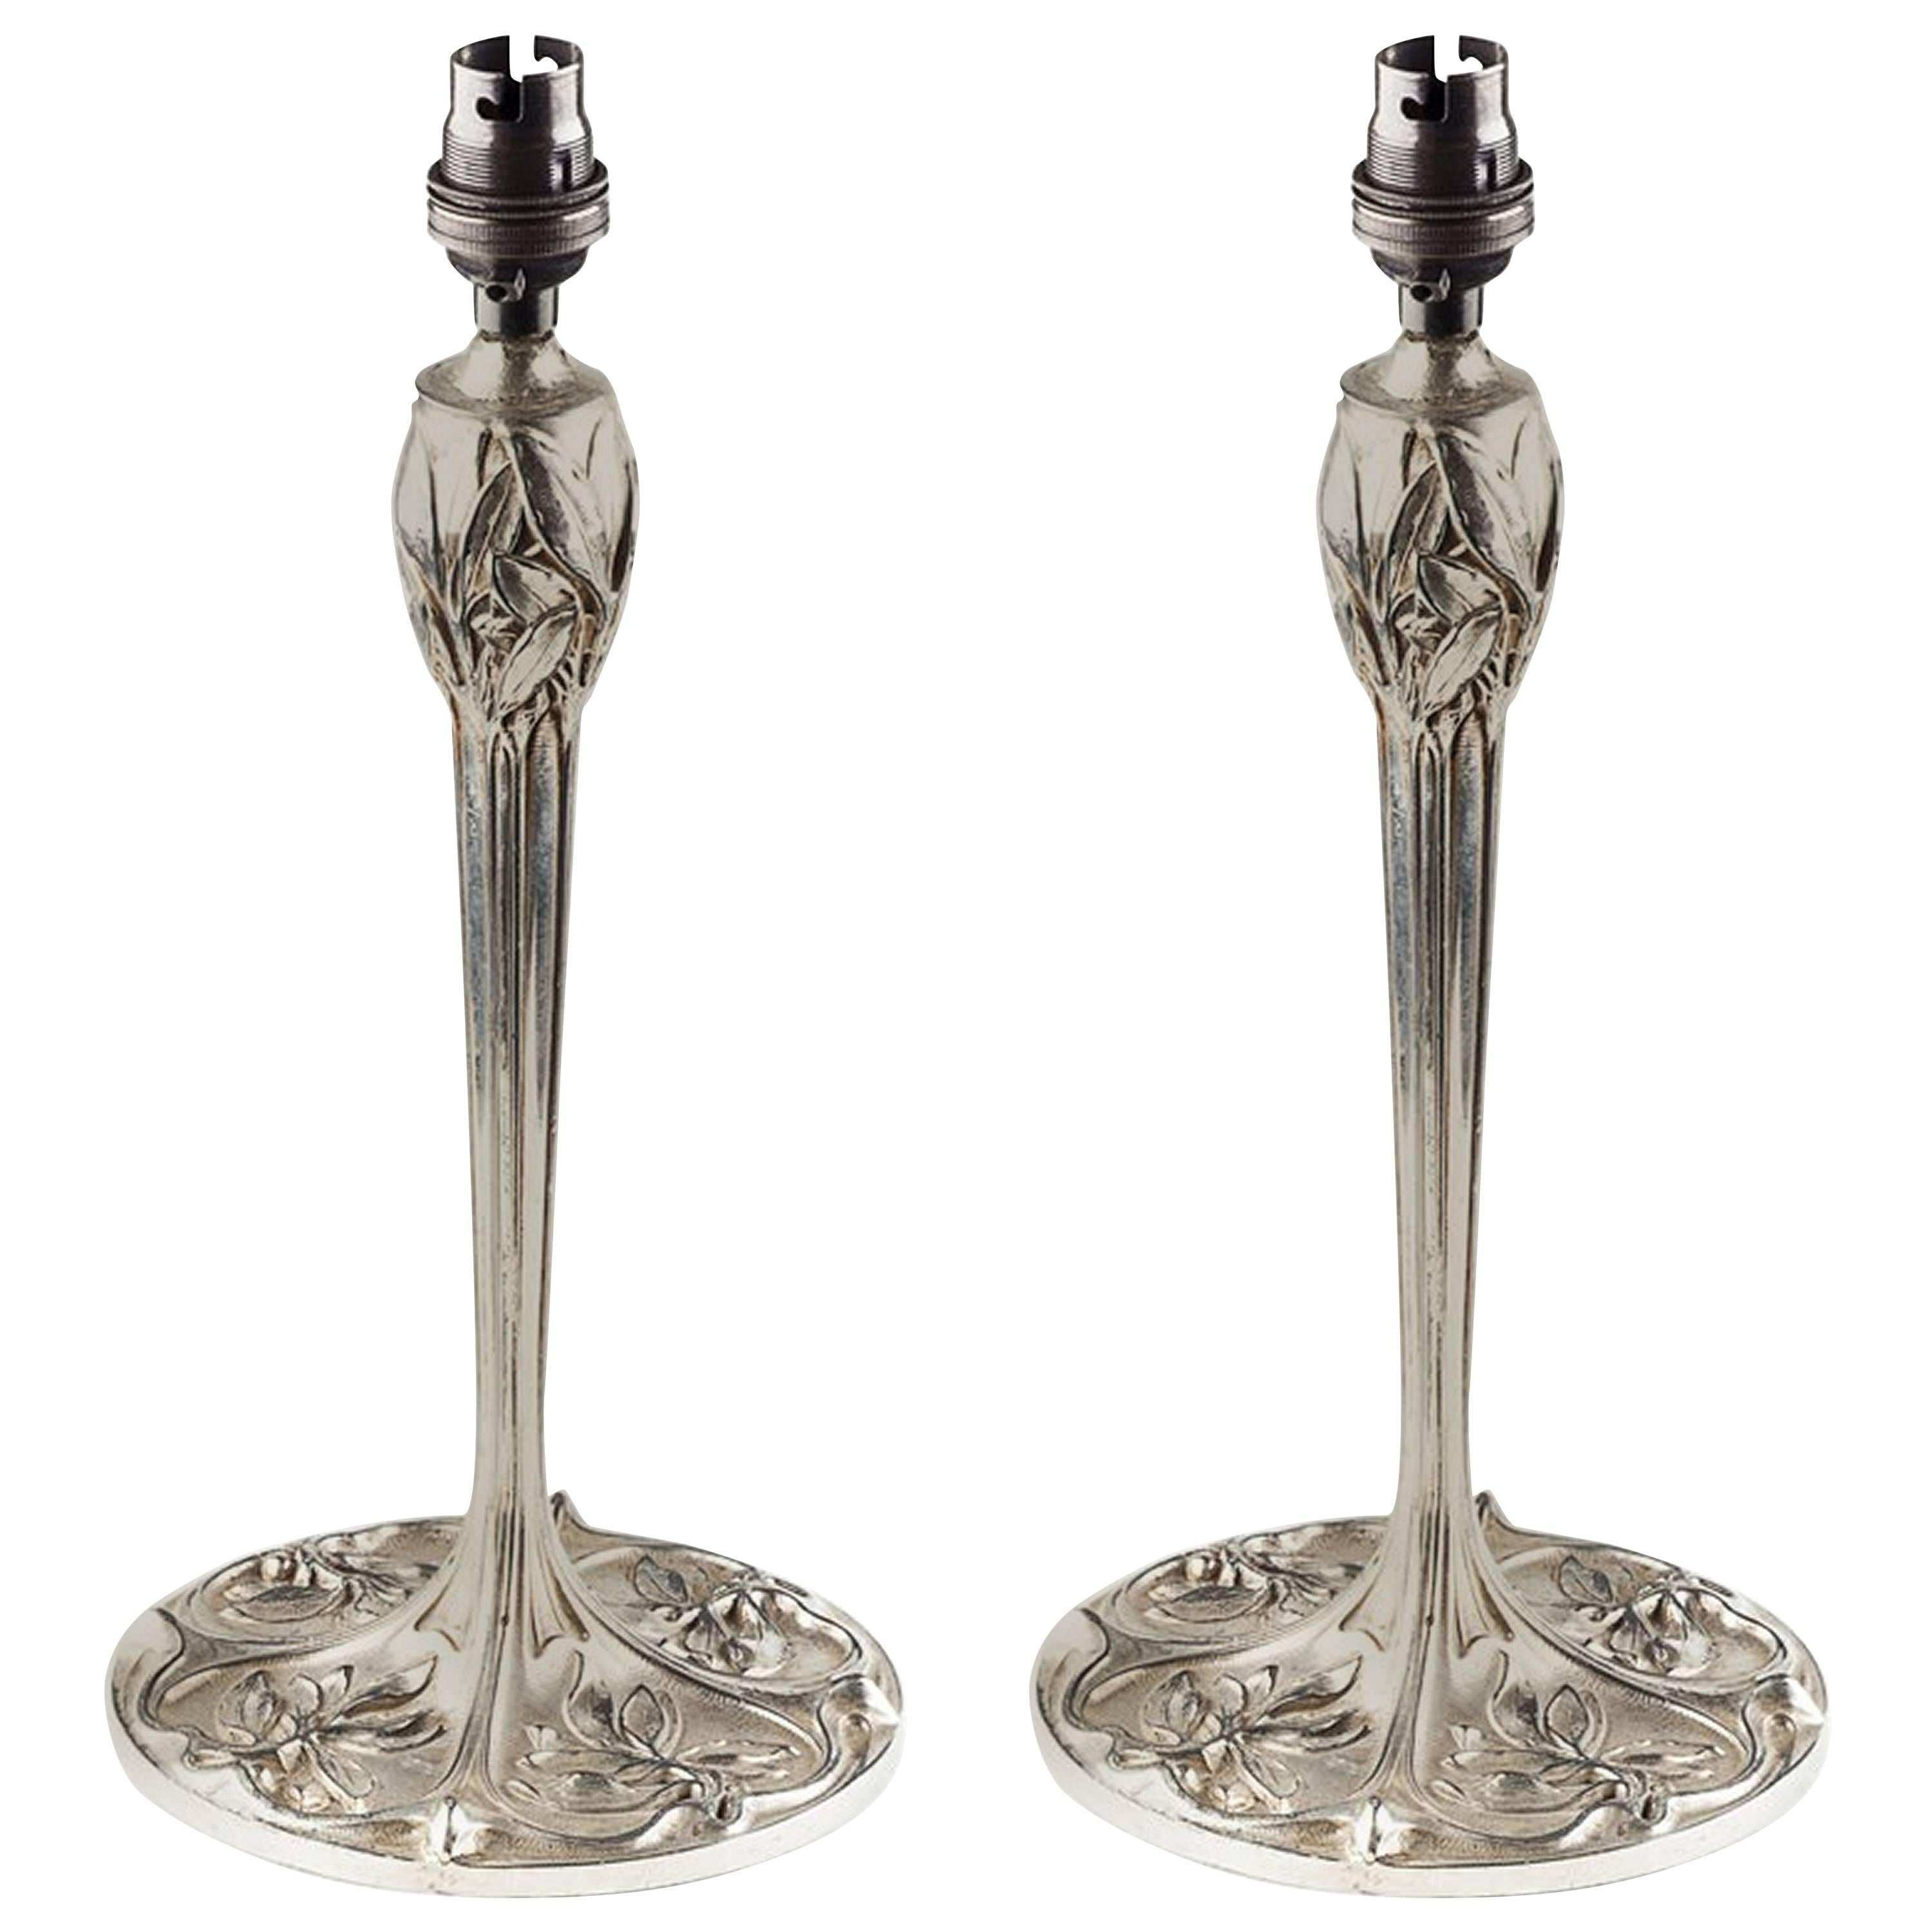 Paire de lampes de bureau Arts and Crafts en métal argenté avec détails floraux stylisés